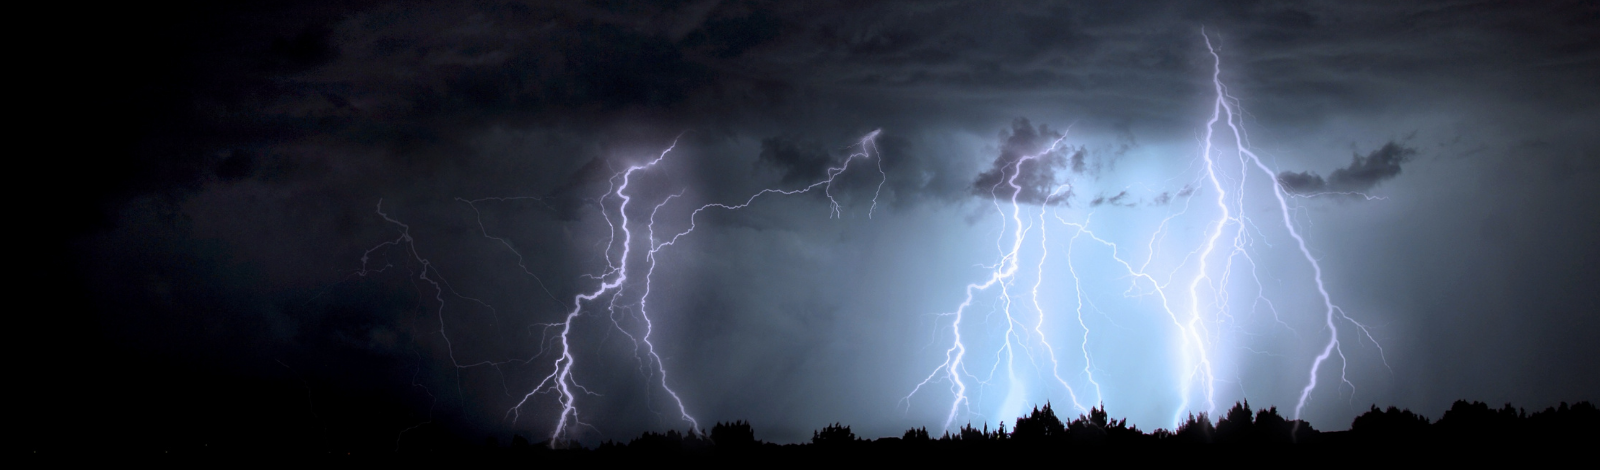 Photo of multiple lightning strikes